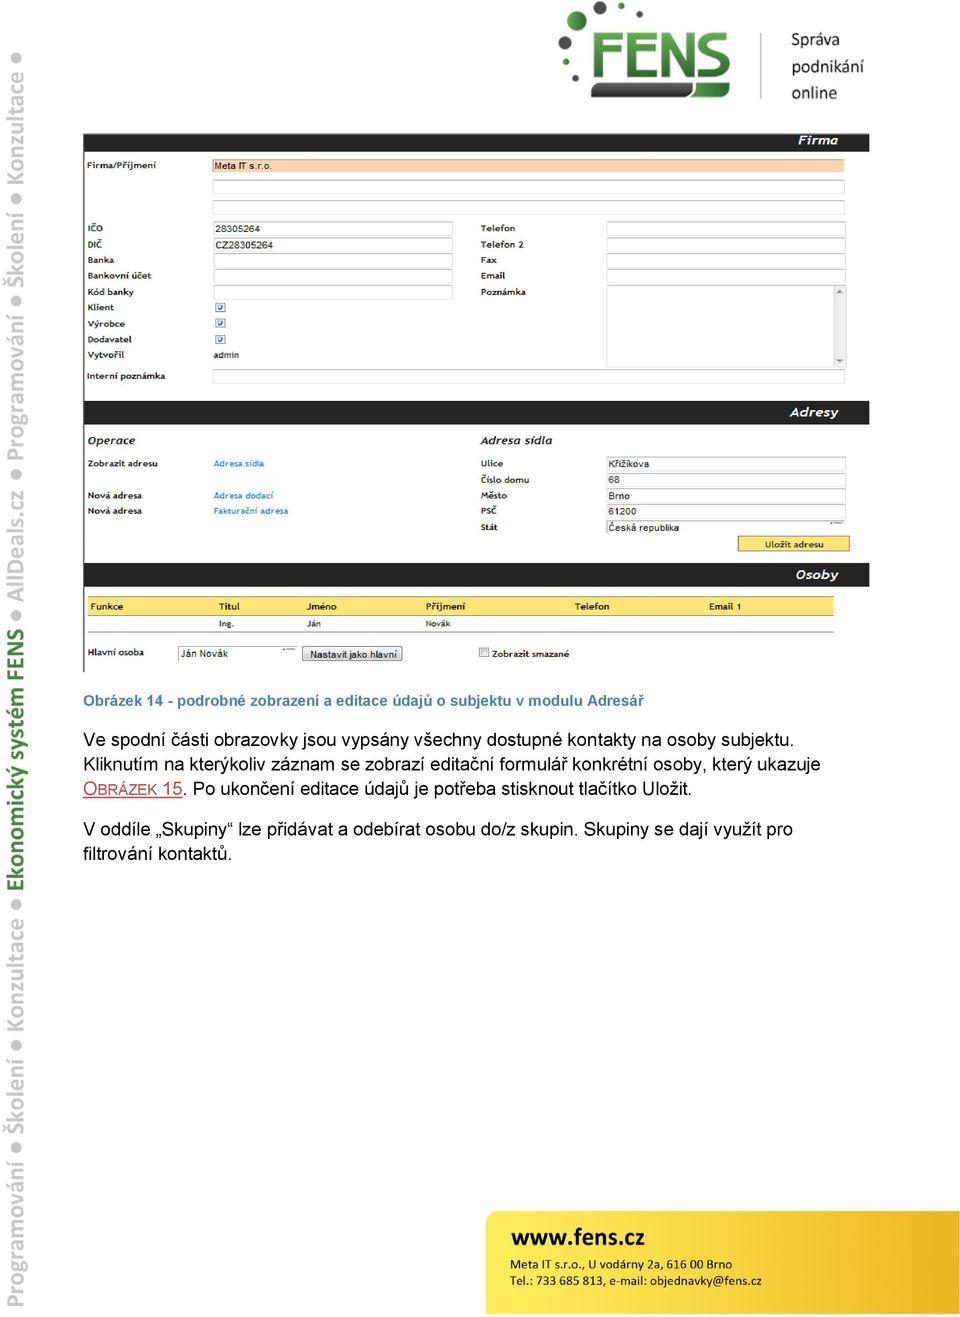 Kliknutím na kterýkoliv záznam se zobrazí editační formulář konkrétní osoby, který ukazuje OBRÁZEK 15.